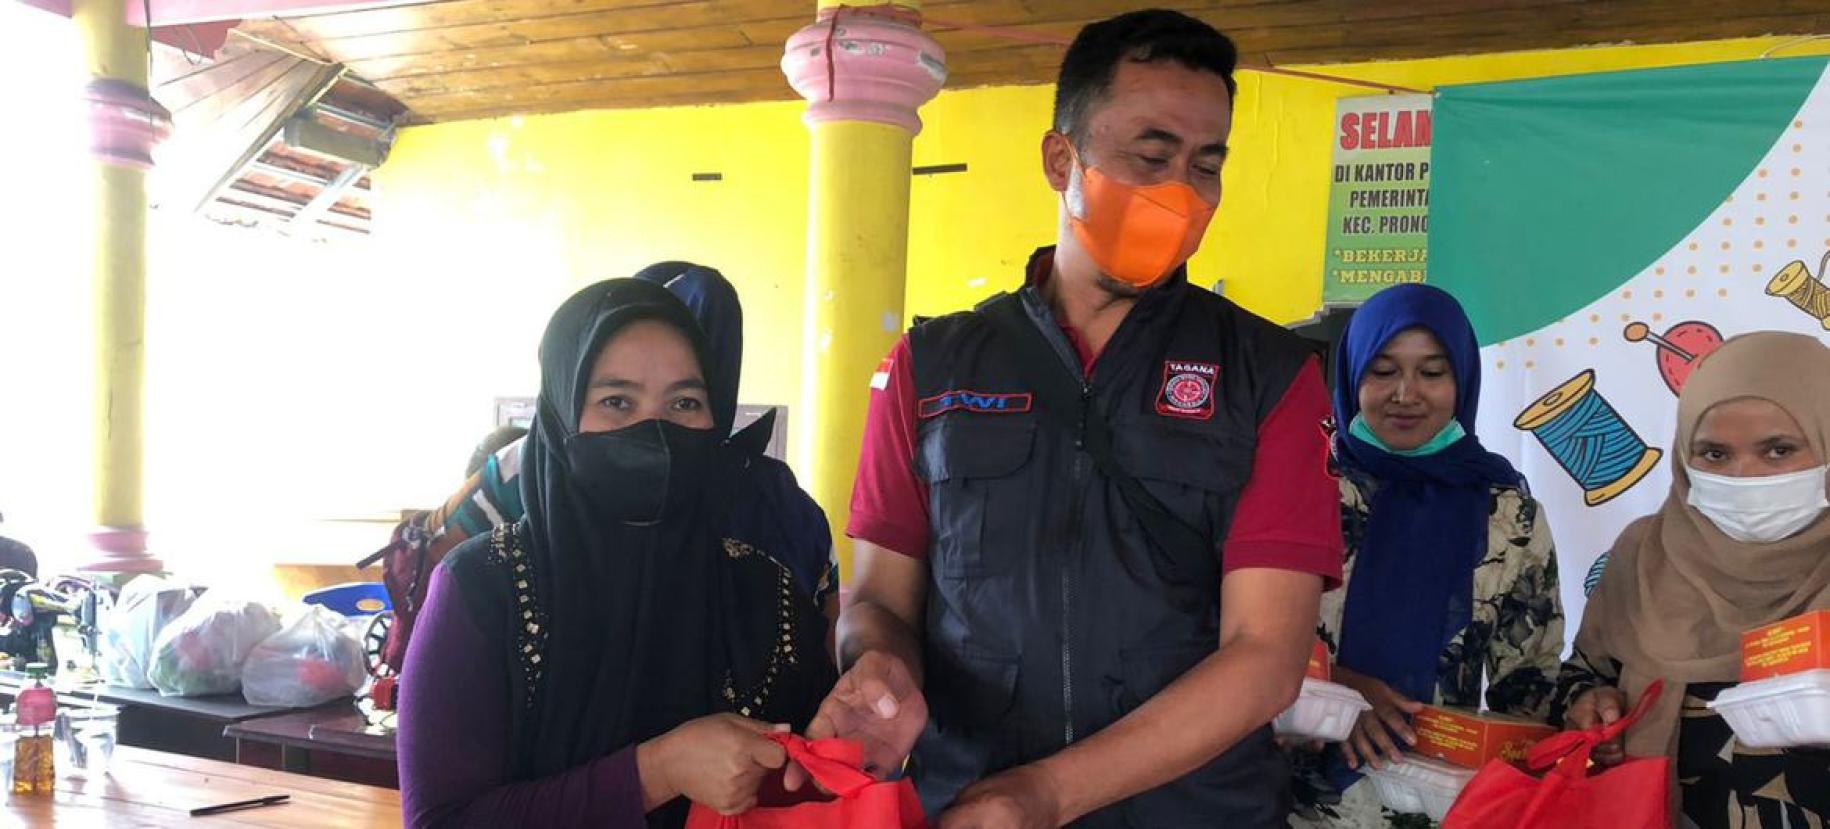 Un homme et une femme portant chacun un masque de protection respiratoire s’affairent avec d’autres personnes autour d’équipements de premiers secours.